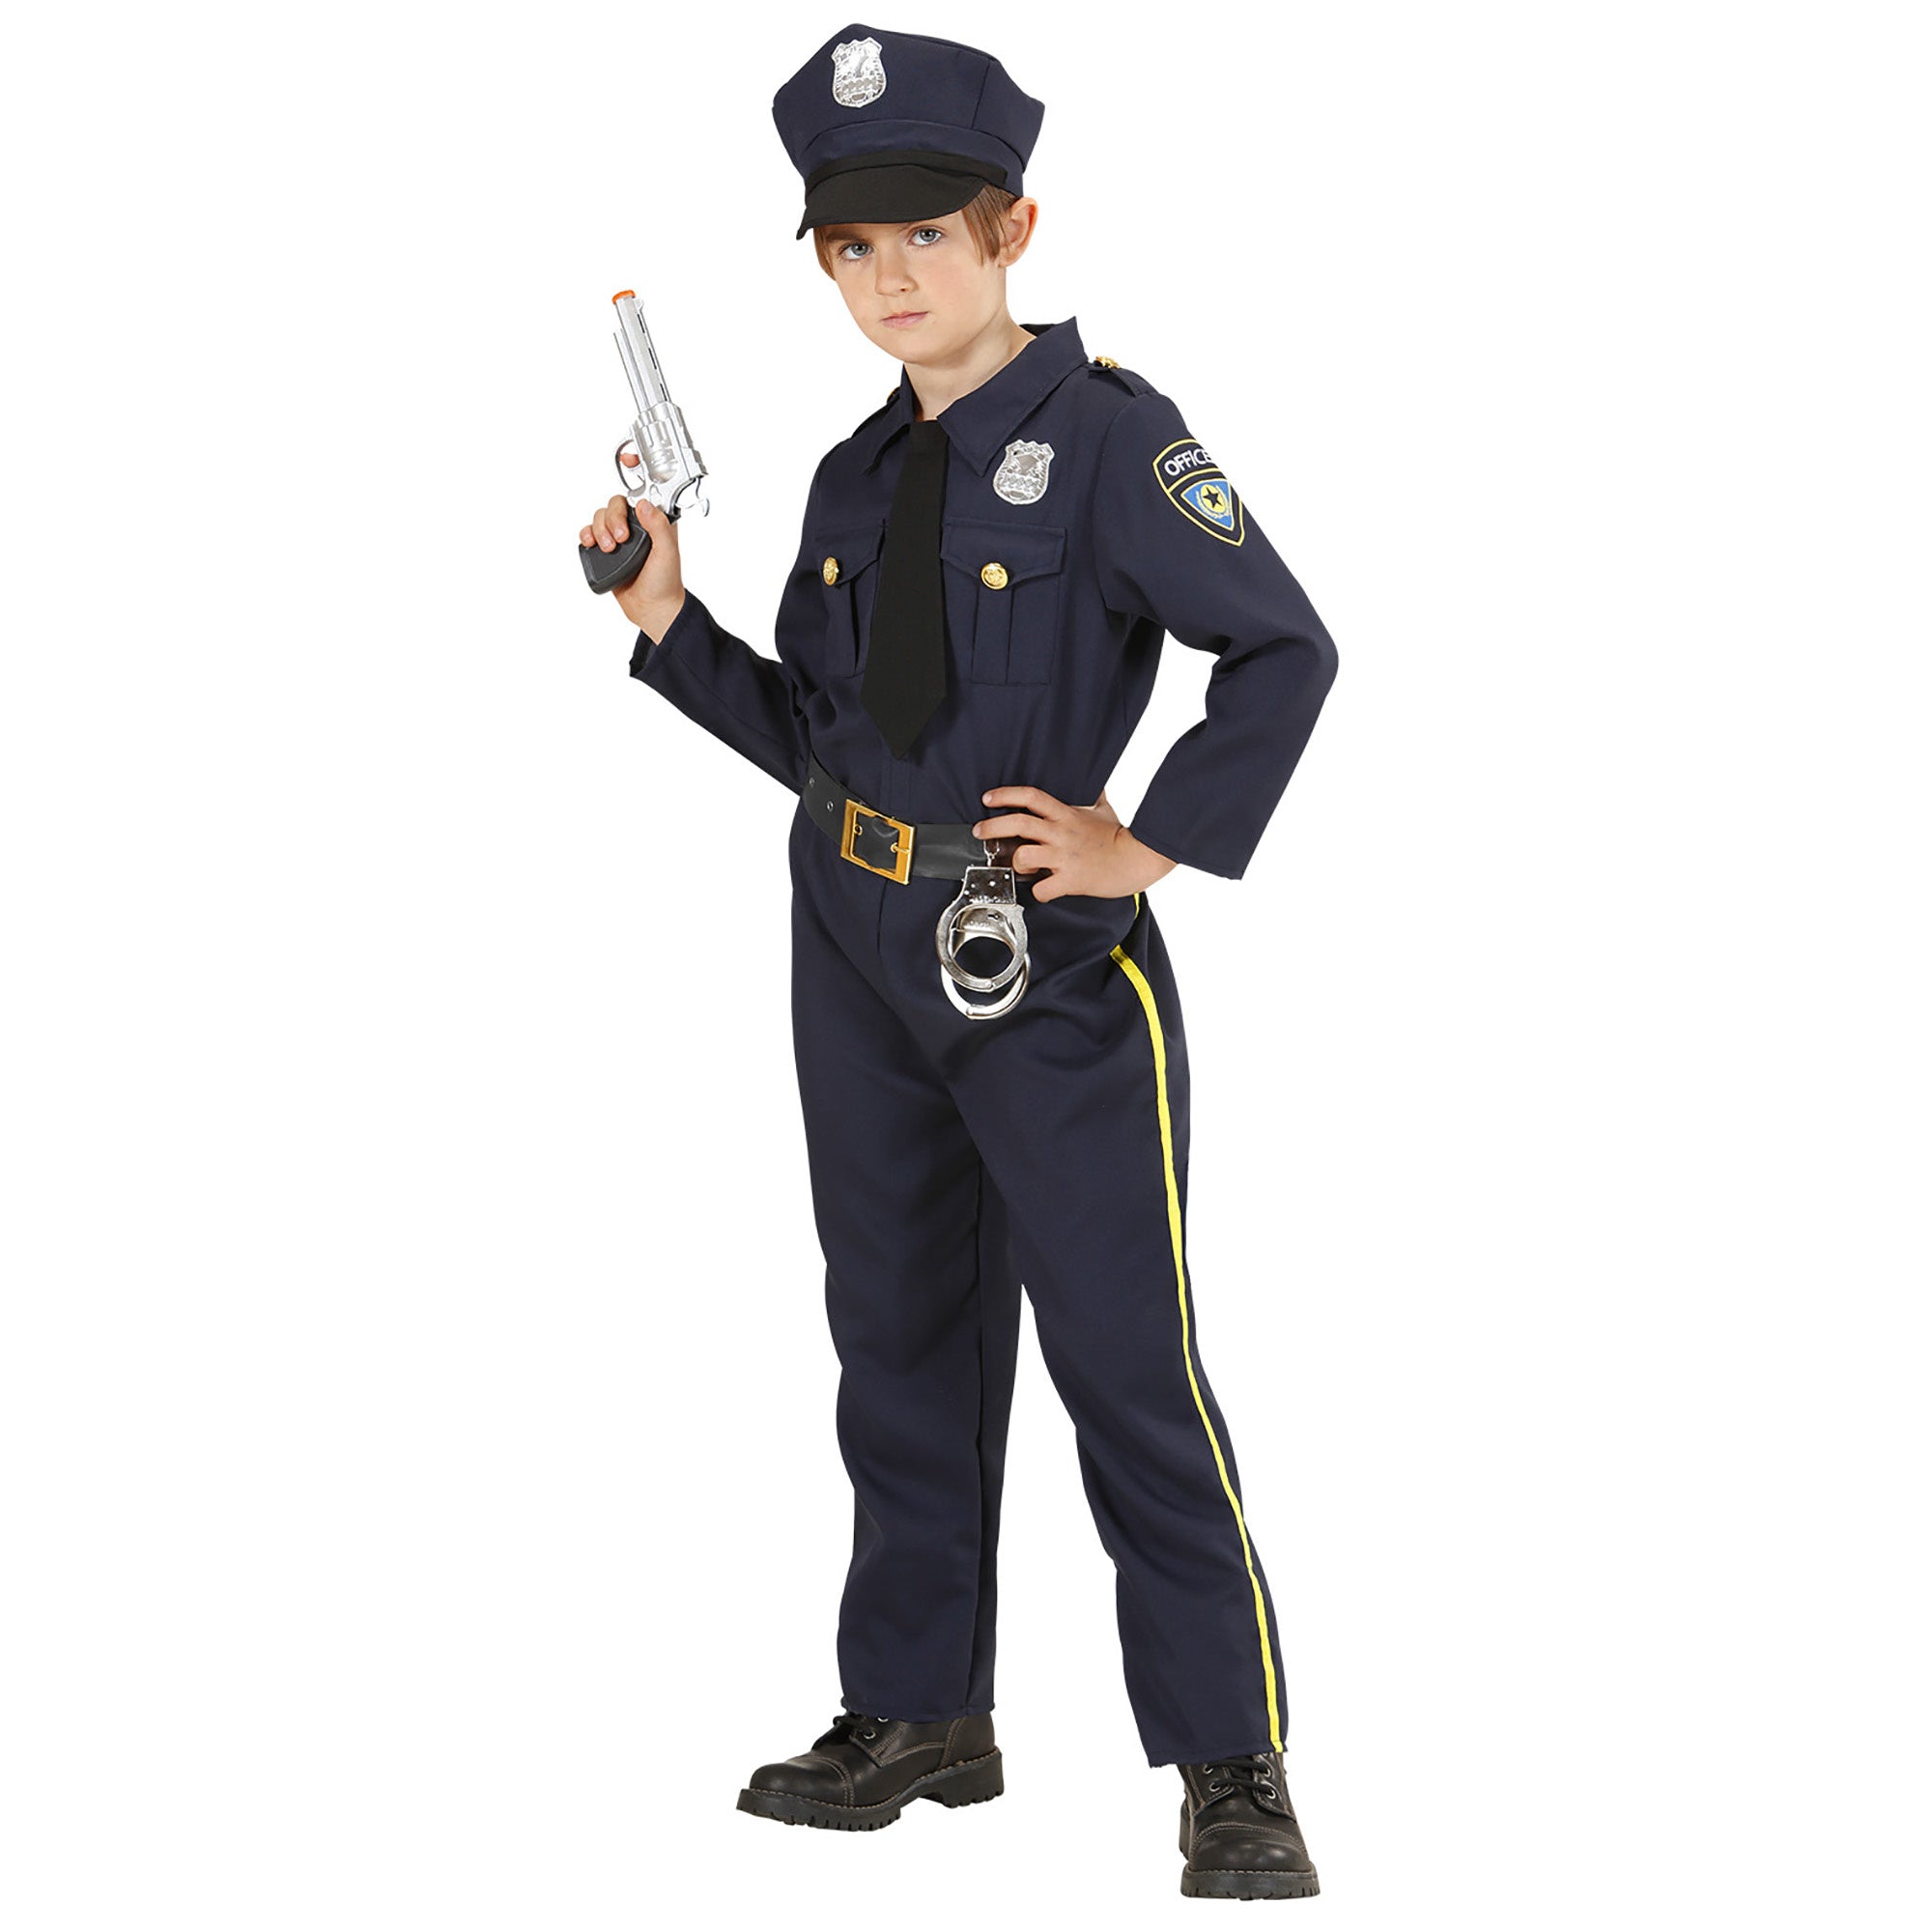 Feestkleding: Politie uniform Kees voor carnaval